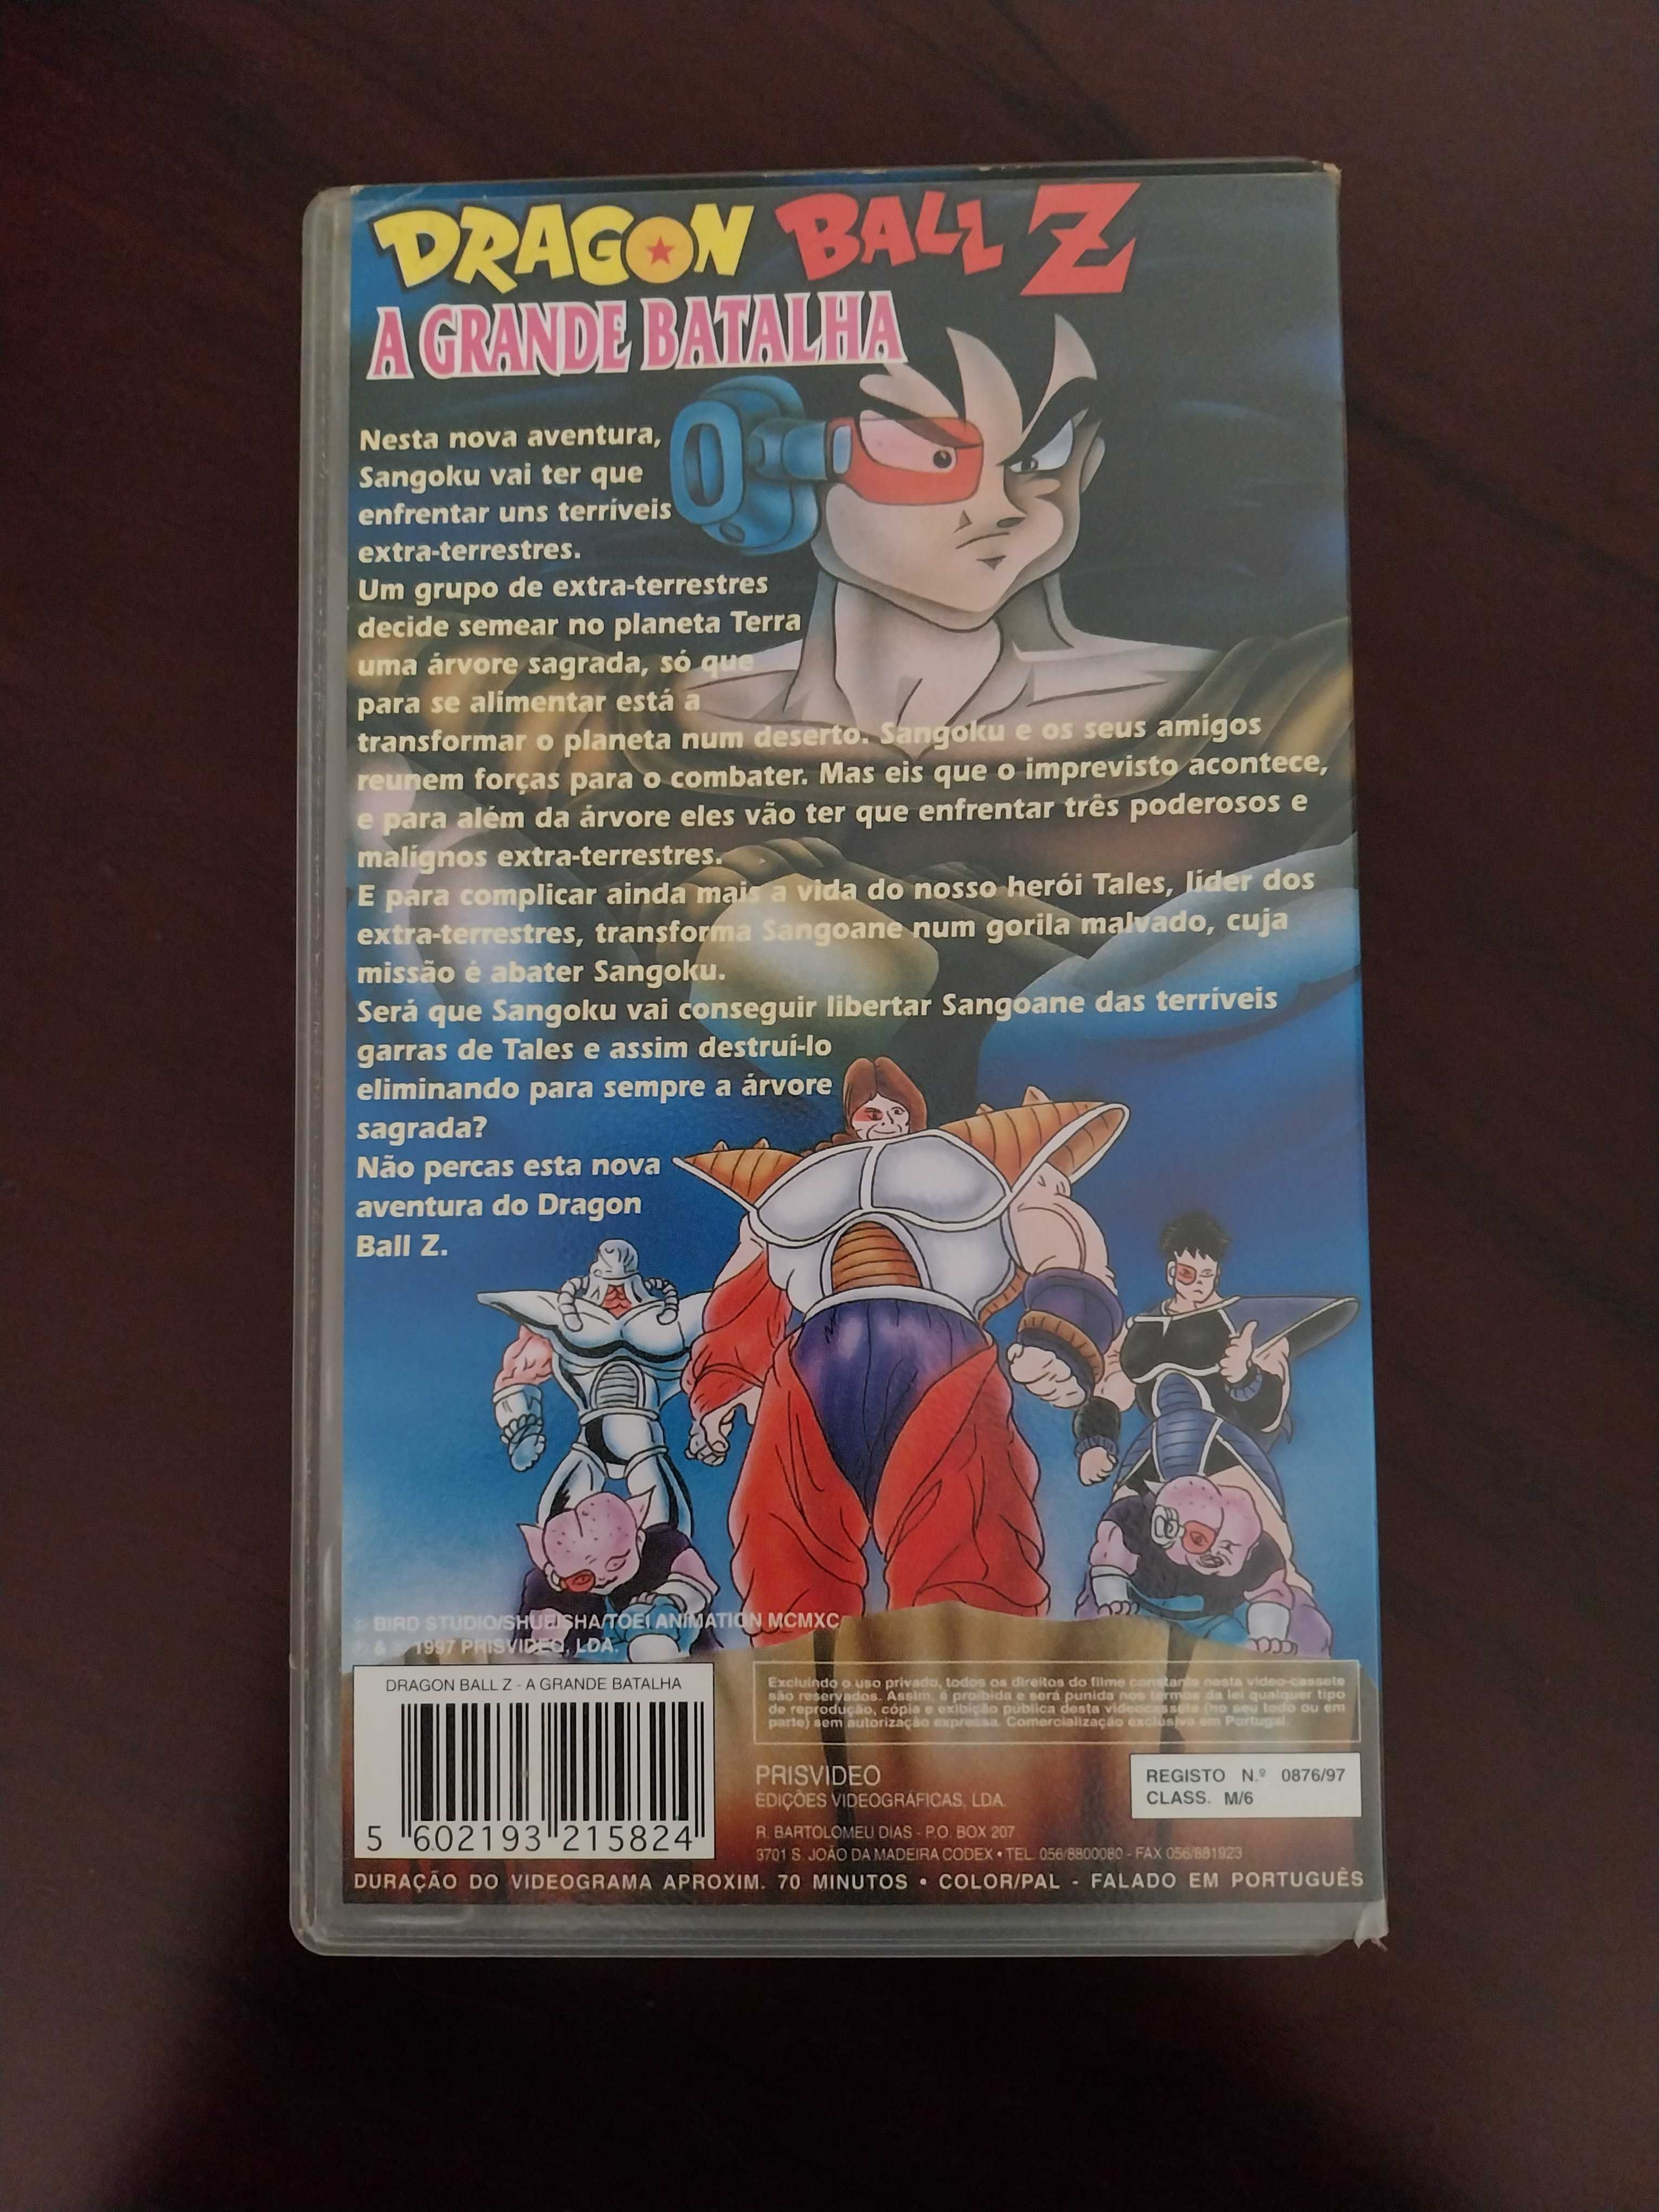 VHS "Dragon Ball Z - A Grande Batalha"